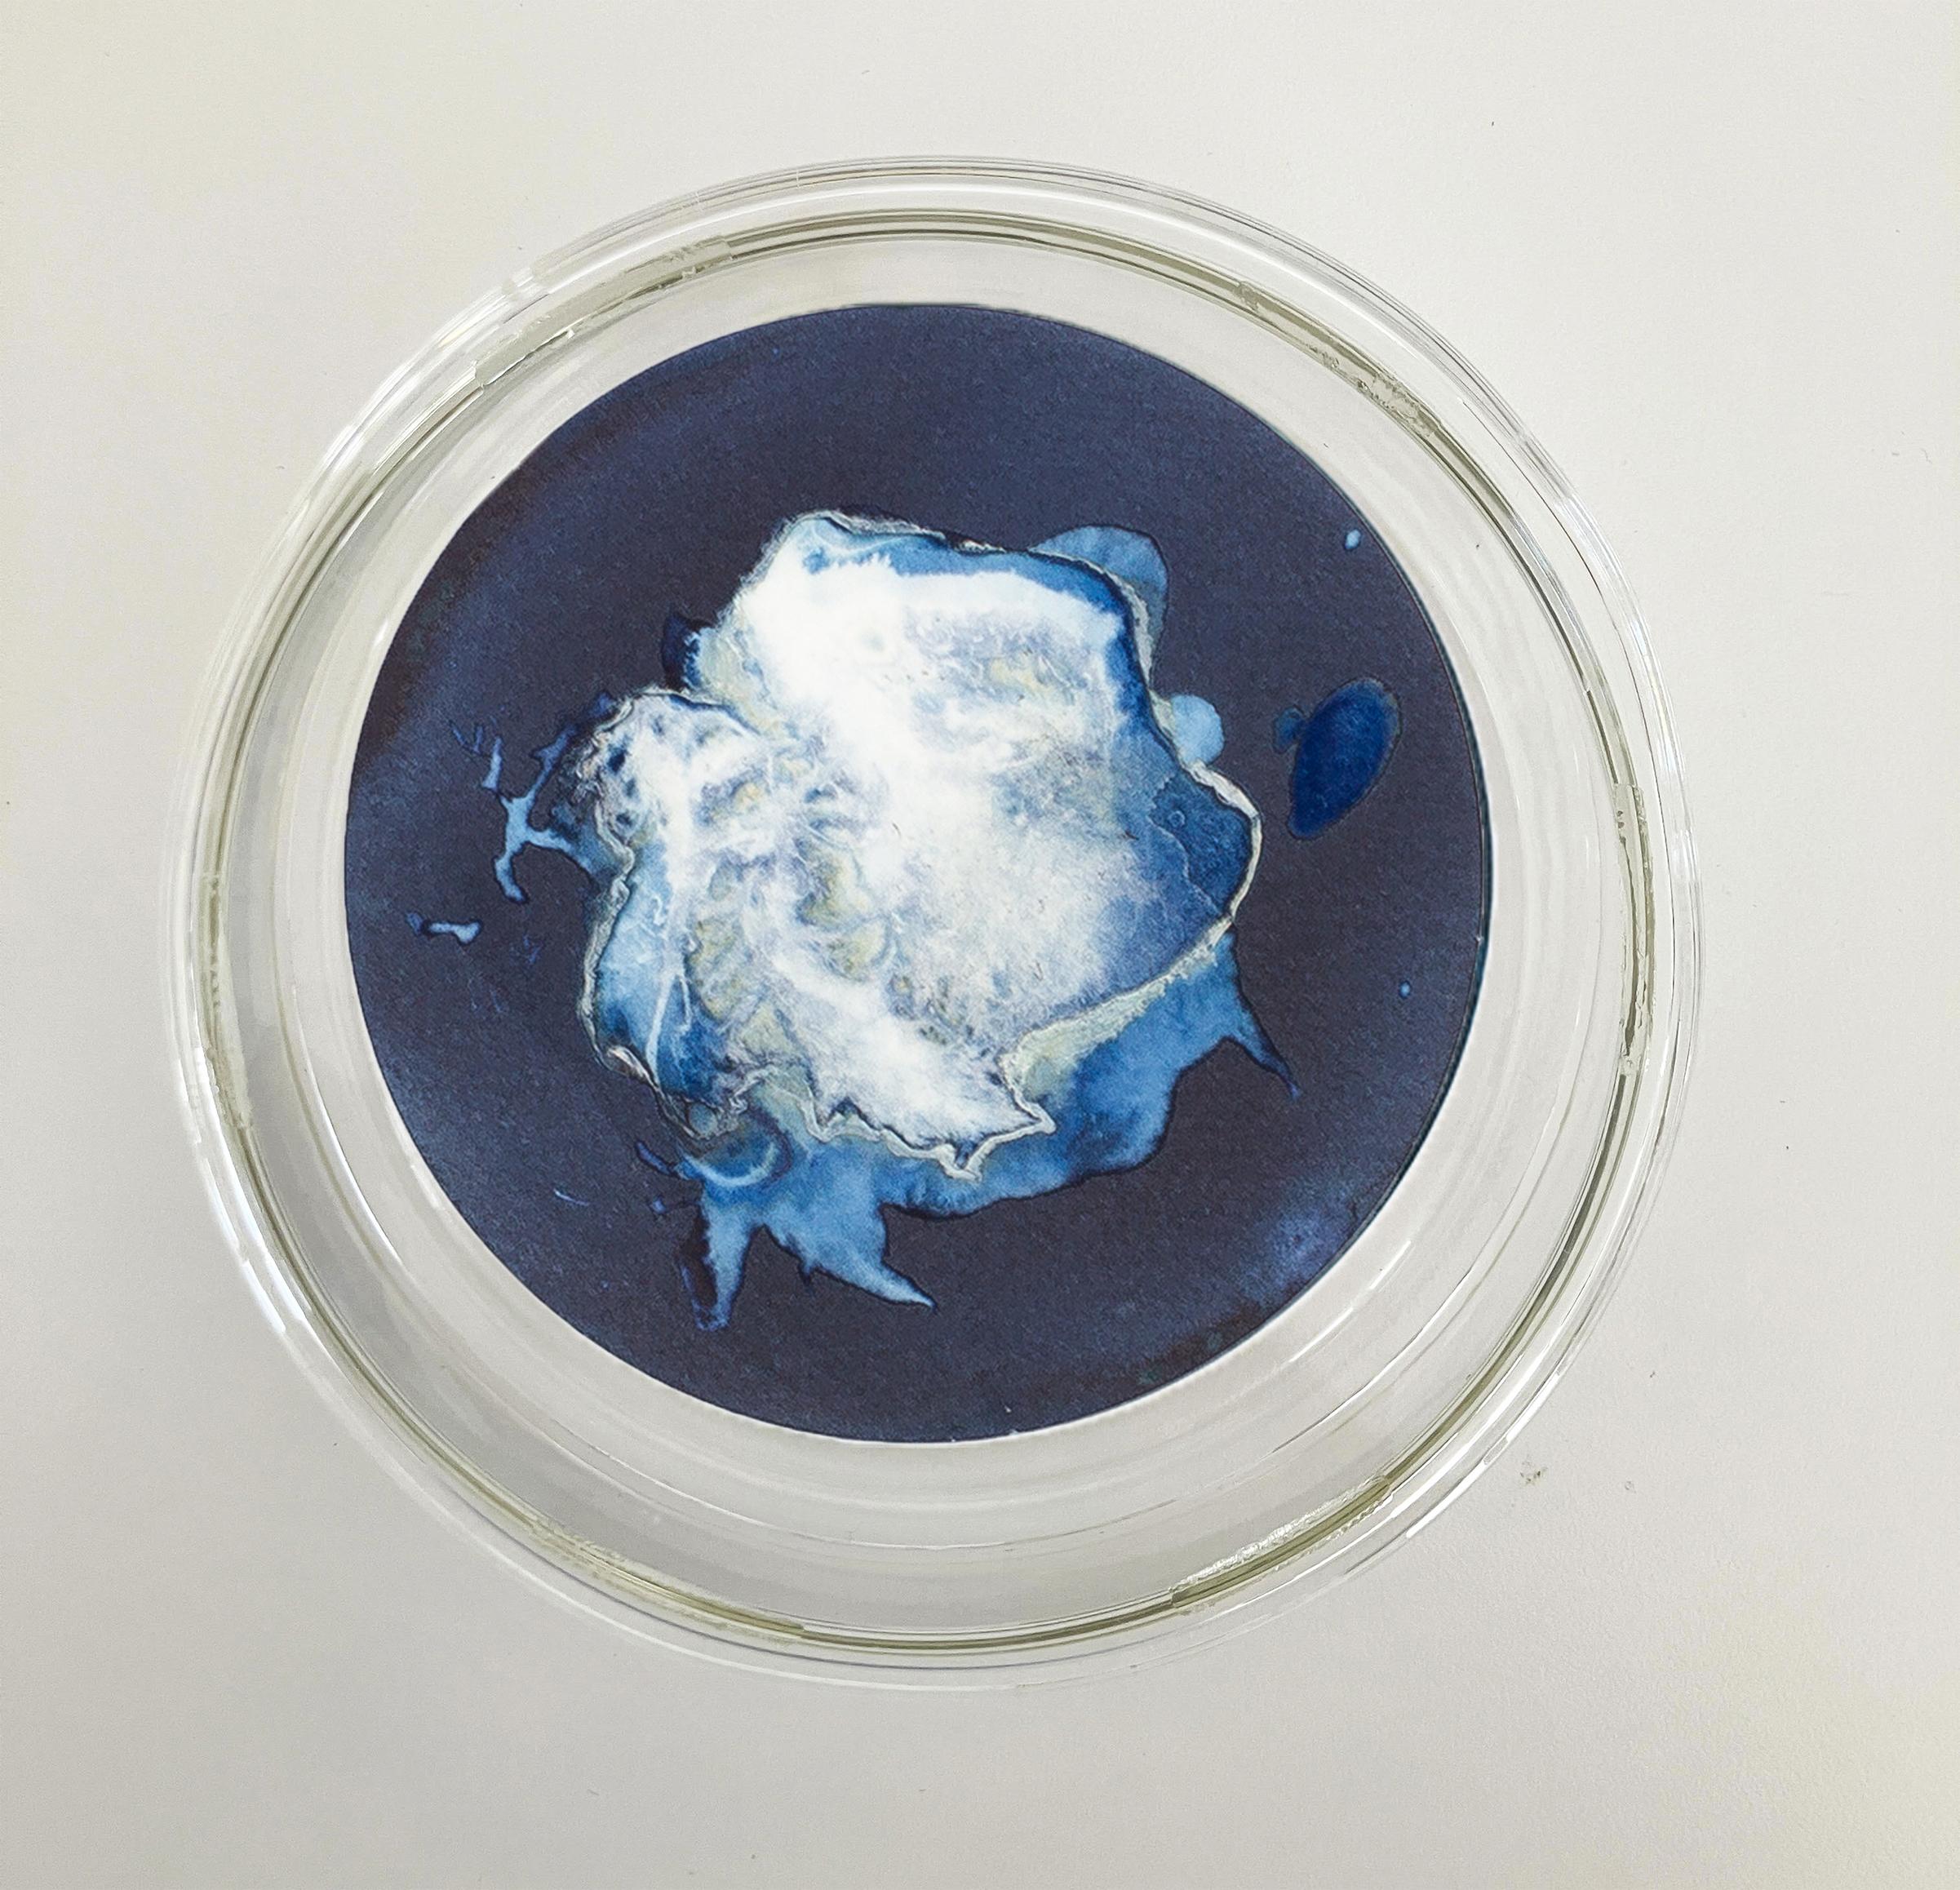 Medusas 11, 12 und 13. Cyanotypie-Fotografien, montiert in einer hochfesten Glasschale – Sculpture von Paola Davila